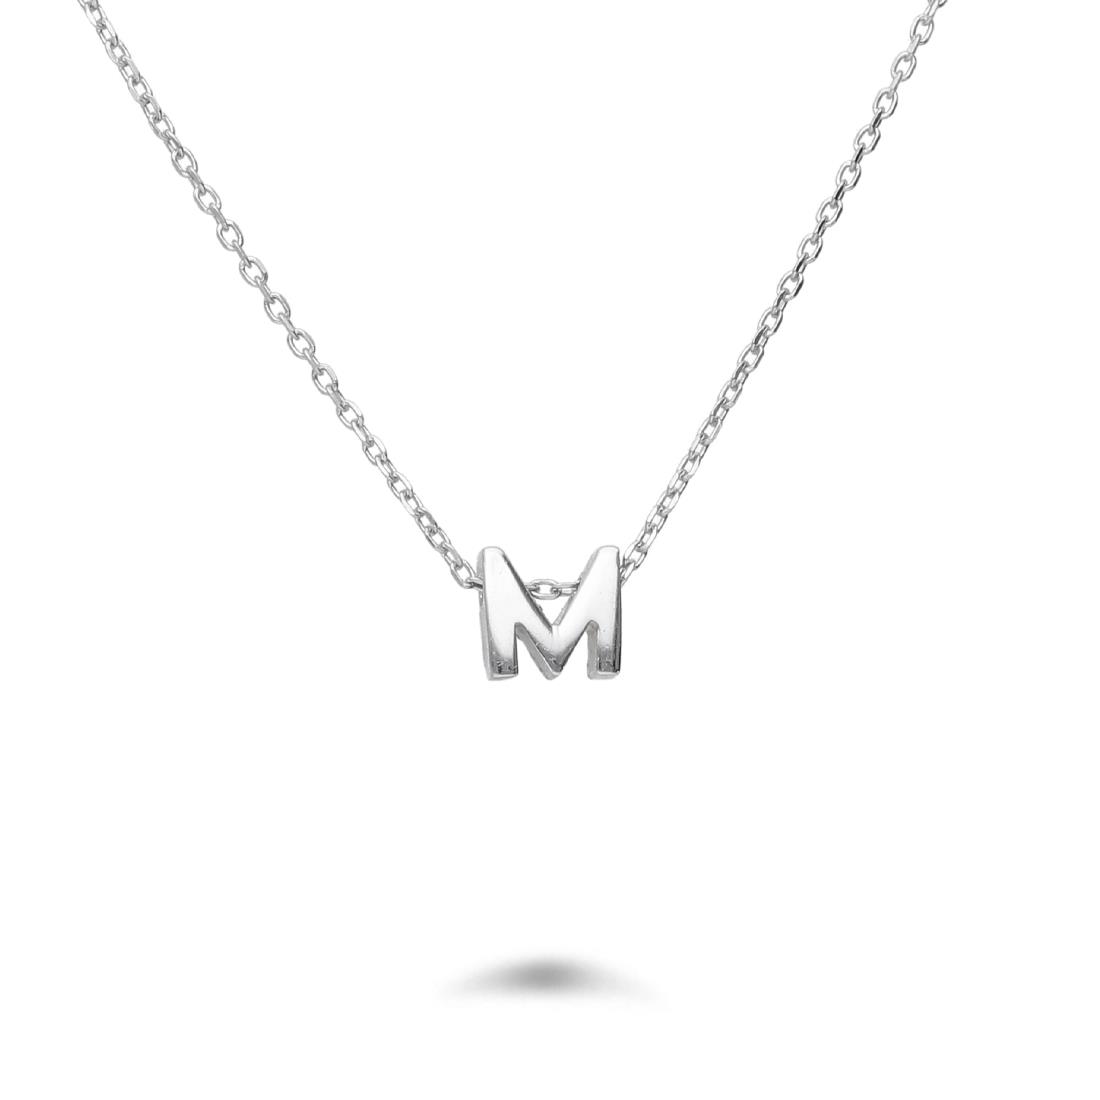 Rolò necklace in rhodium-plated silver with letter M - DESIDERI PREZIOSI